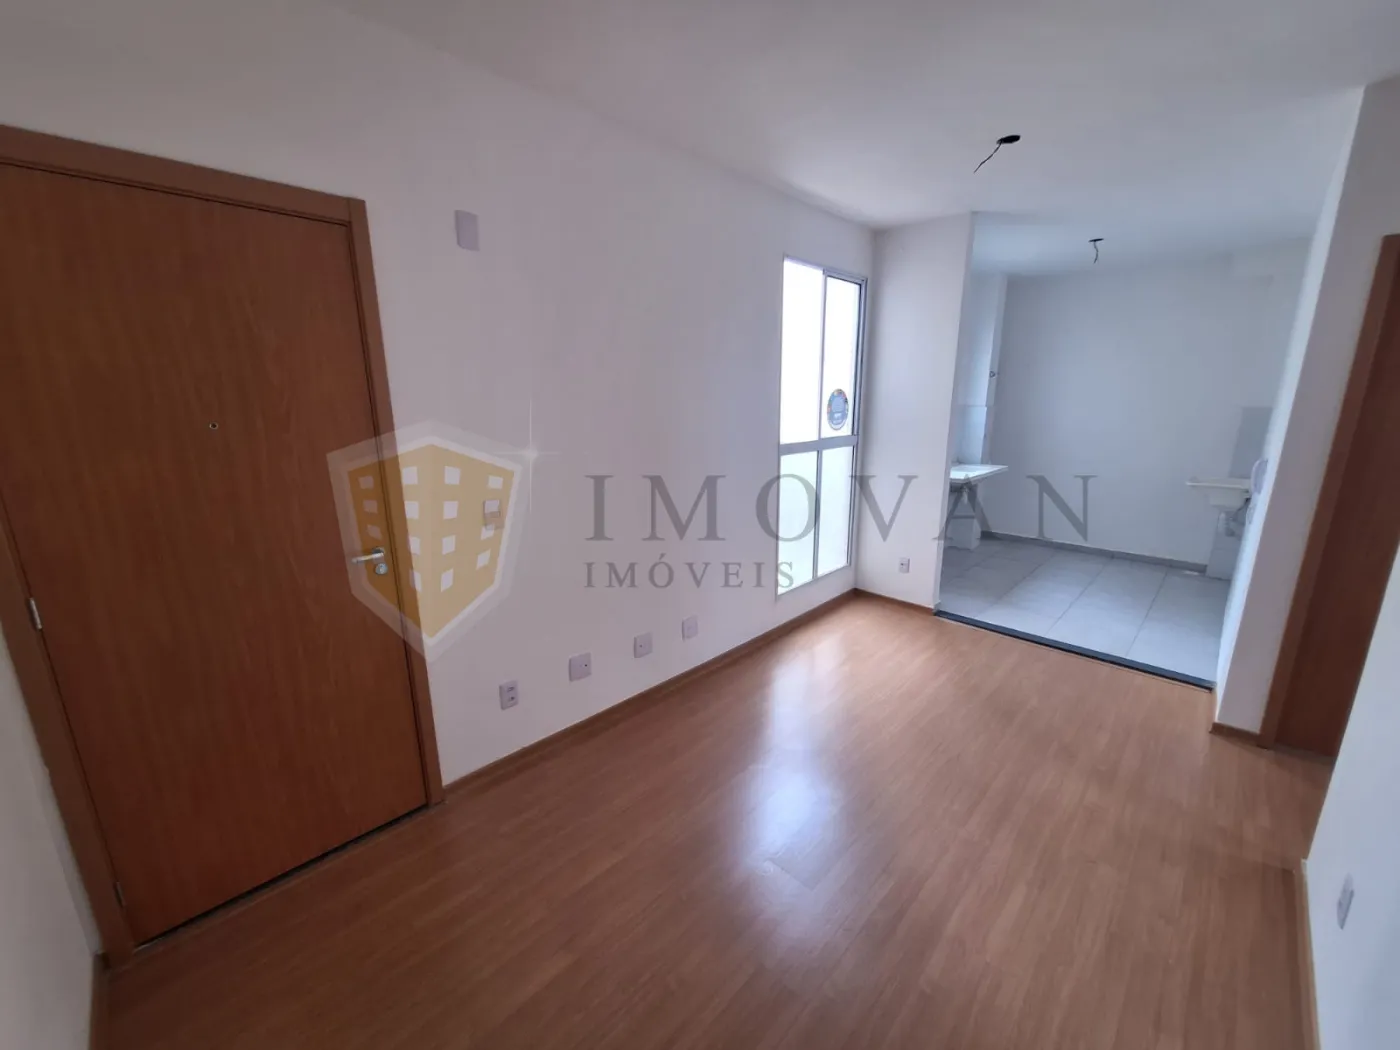 Comprar Apartamento / Padrão em Ribeirão Preto R$ 155.000,00 - Foto 3